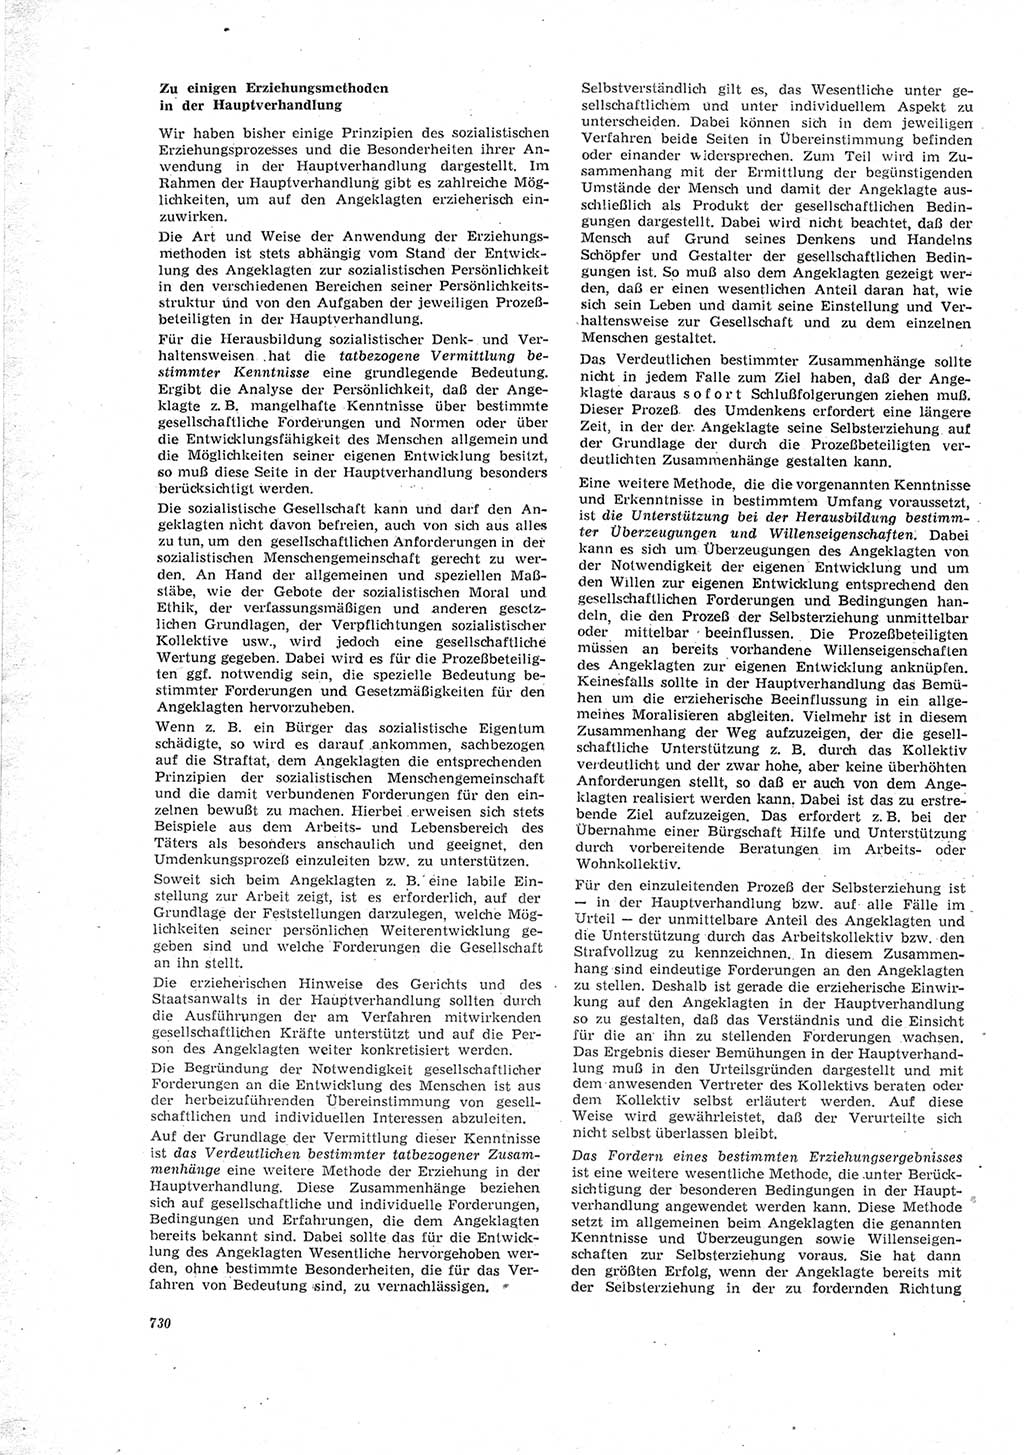 Neue Justiz (NJ), Zeitschrift für Recht und Rechtswissenschaft [Deutsche Demokratische Republik (DDR)], 23. Jahrgang 1969, Seite 730 (NJ DDR 1969, S. 730)